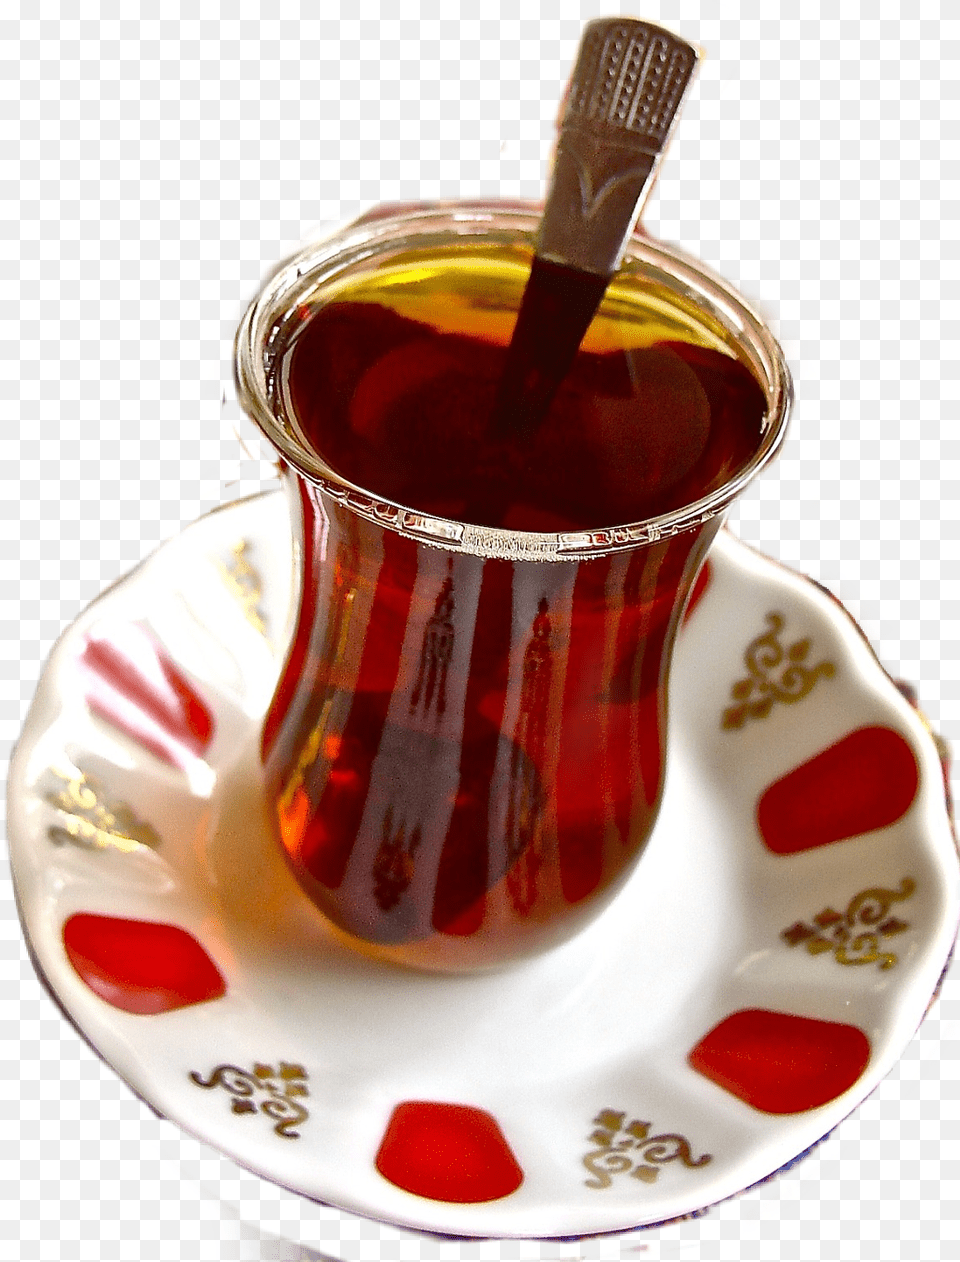 Drink, Saucer, Cup, Beverage, Tea Free Transparent Png